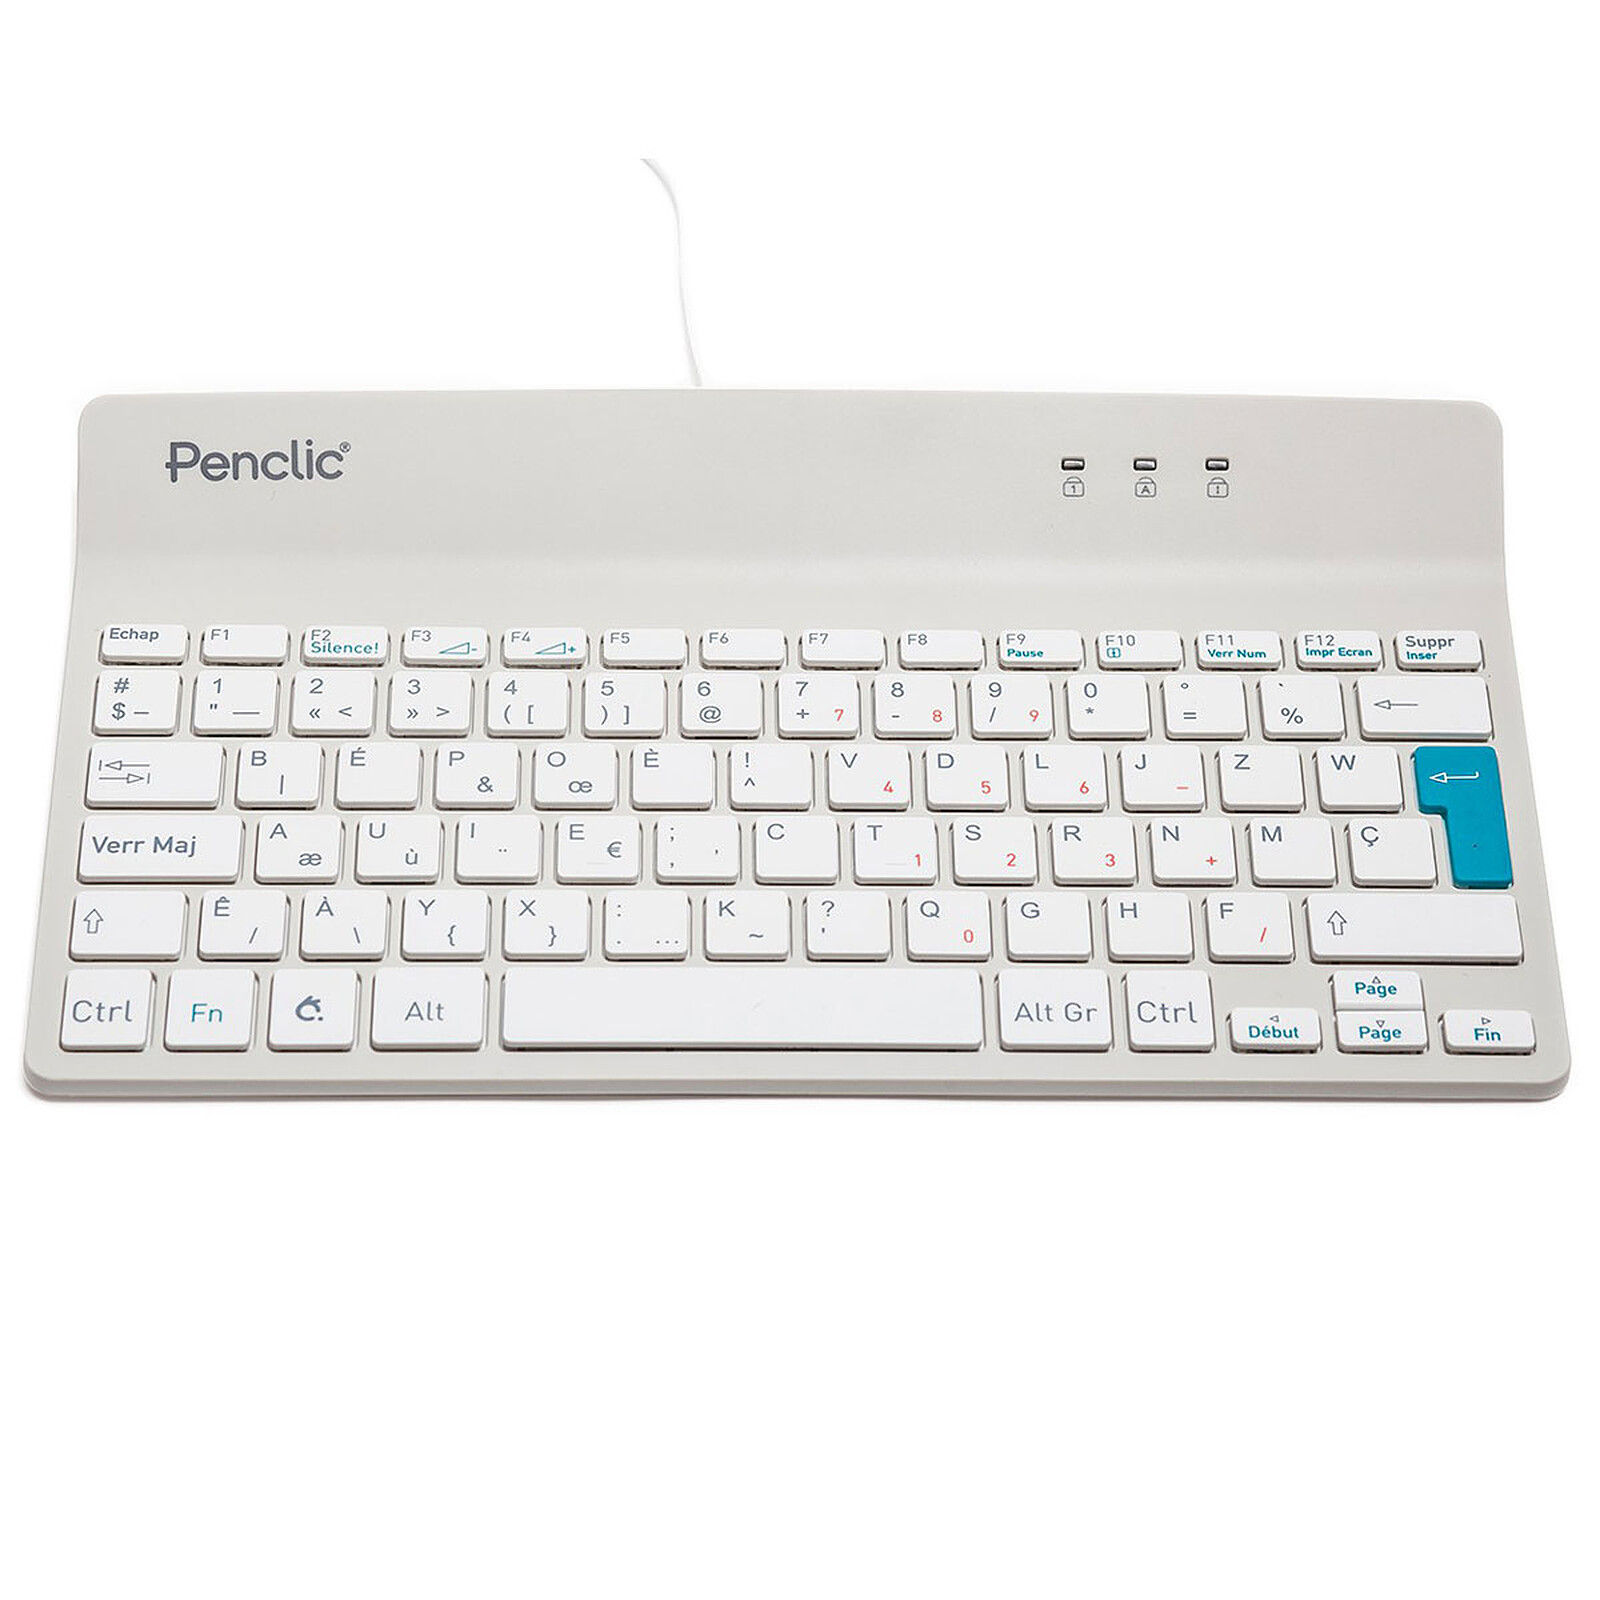 Penclic Wired Mini Keyboard